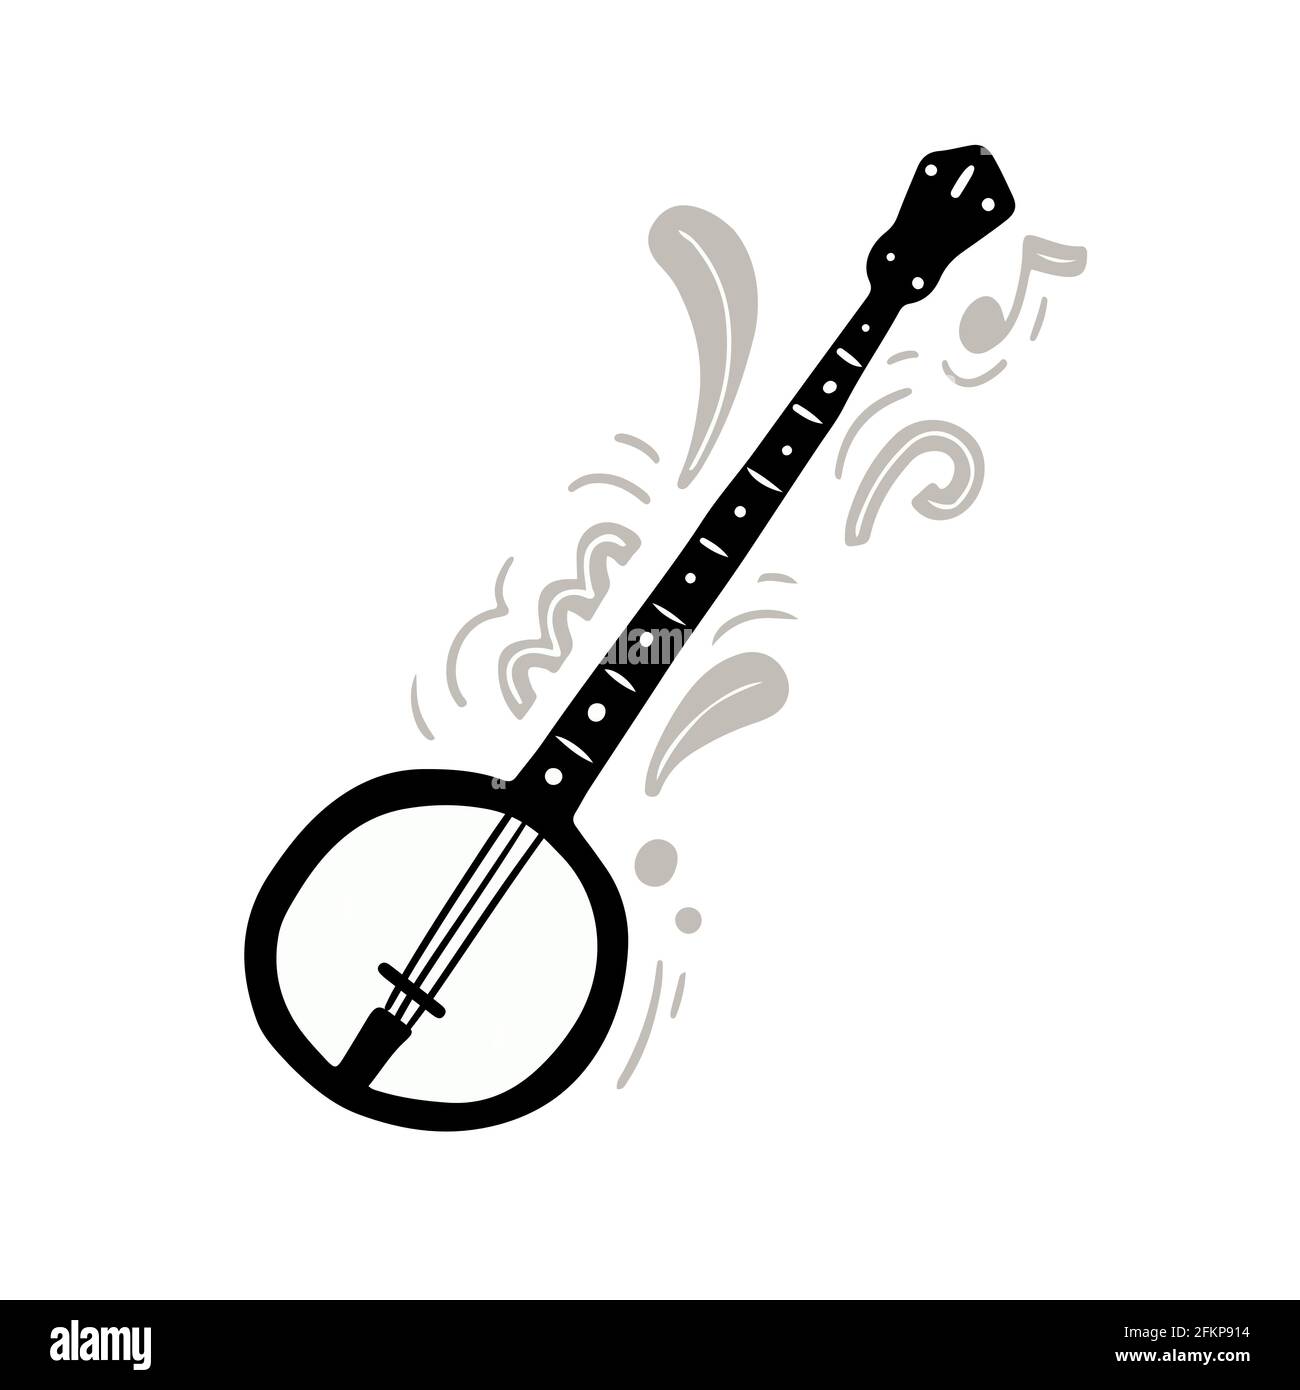 Illustration vectorielle monochrome de la main banjo traditionnelle noire et blanche style plat minimaliste, orné d'ornements abstraits et créatifs notes jouant de la musique énergique Illustration de Vecteur